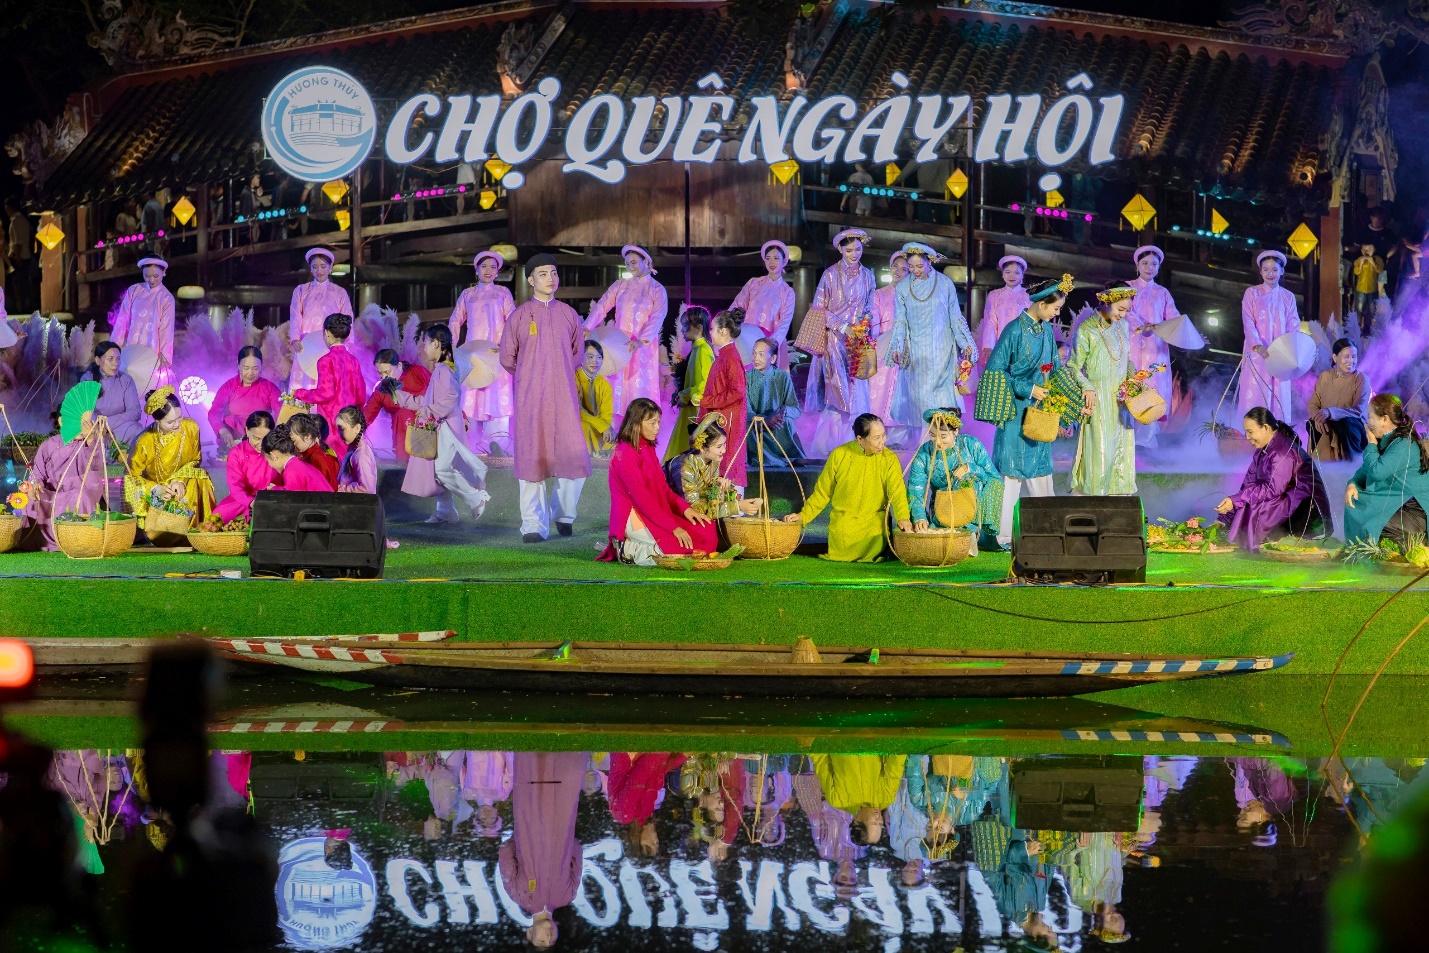 Vui nhộn ‘Chợ quê ngày hội’ bên cây cầu nổi tiếng xứ Huế - 2